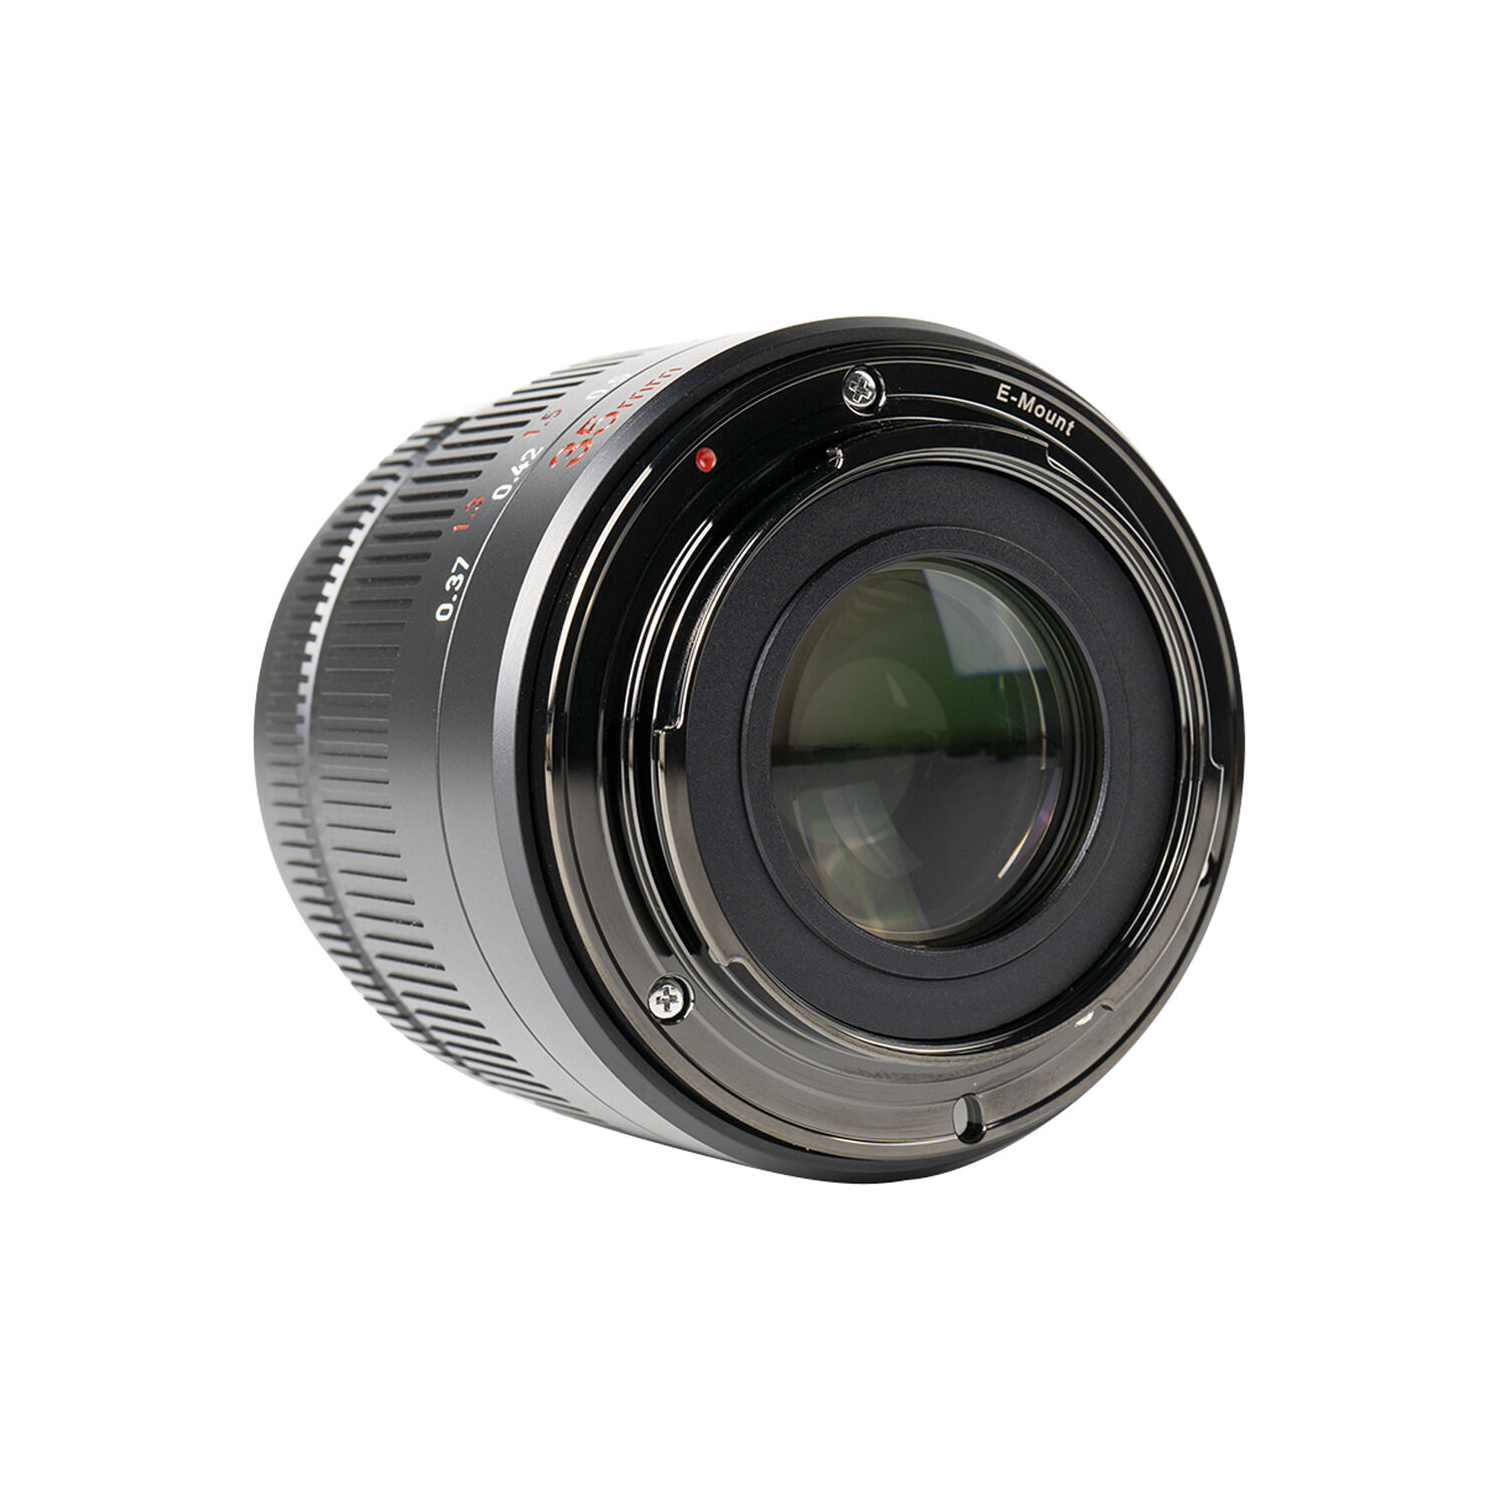 7artisans Photoelectric 35mm f/0.95 Lens for Sony E Mount